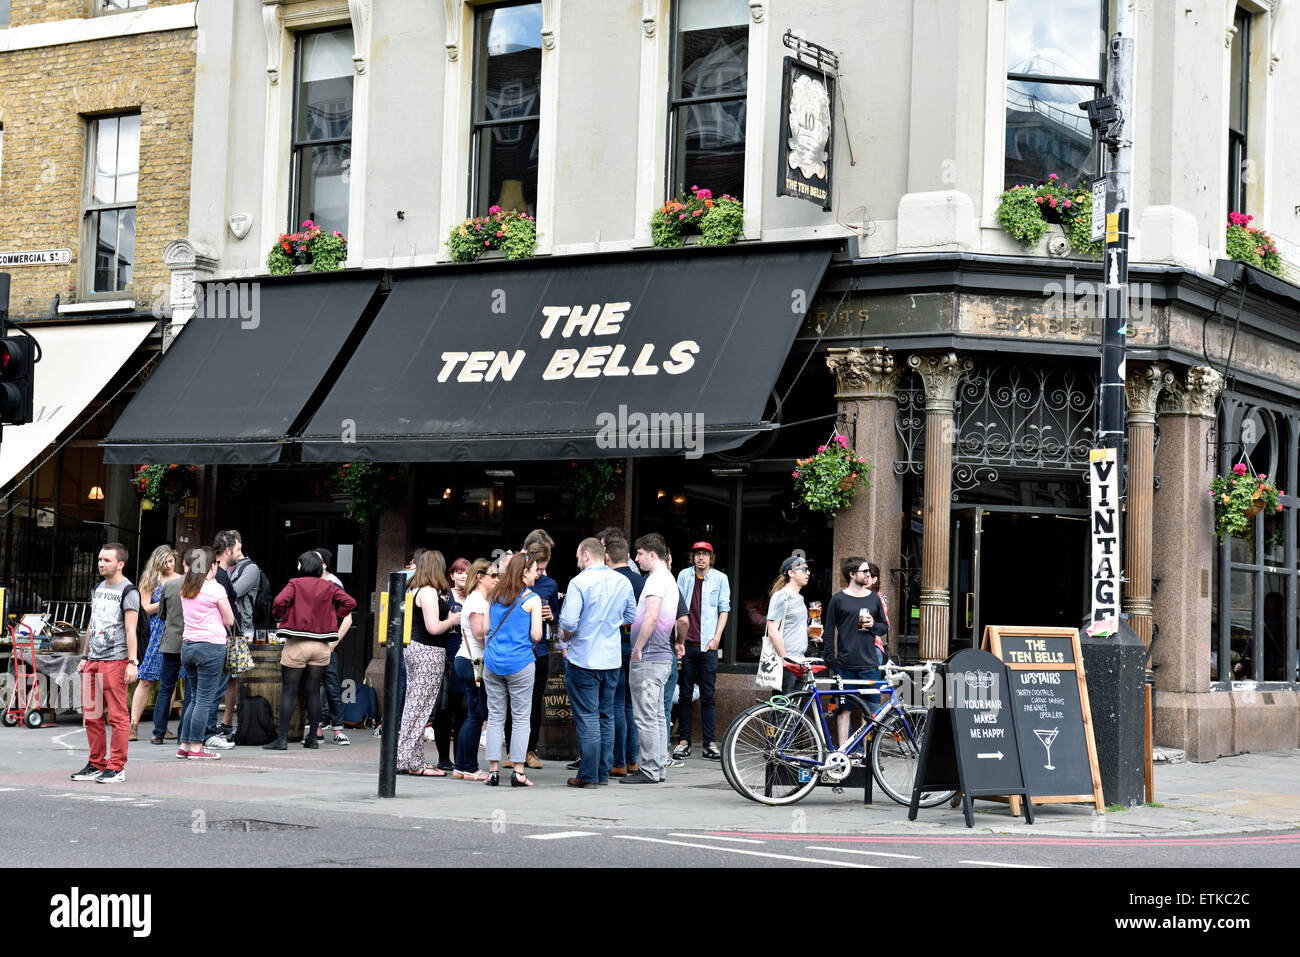 Menschen Sie außerhalb der zehn Glocken Gastwirtschaft Commercial Street, e. 1. Spitalfields, London Borough of Tower Hamlets England Großbritannien Stockfoto